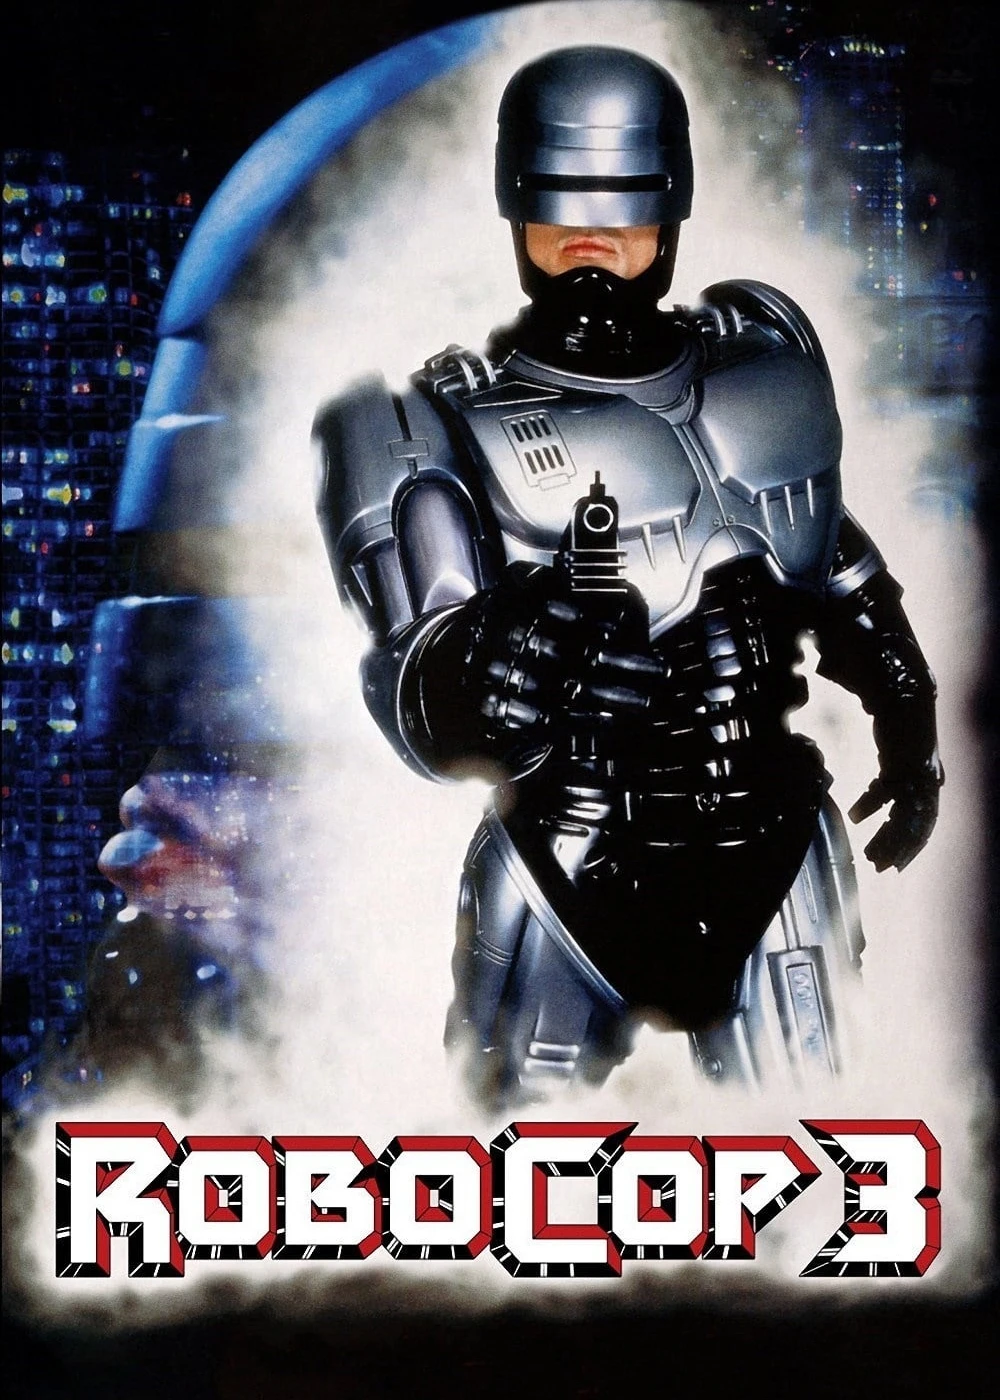 RoboCop 3 | RoboCop 3 (1993)